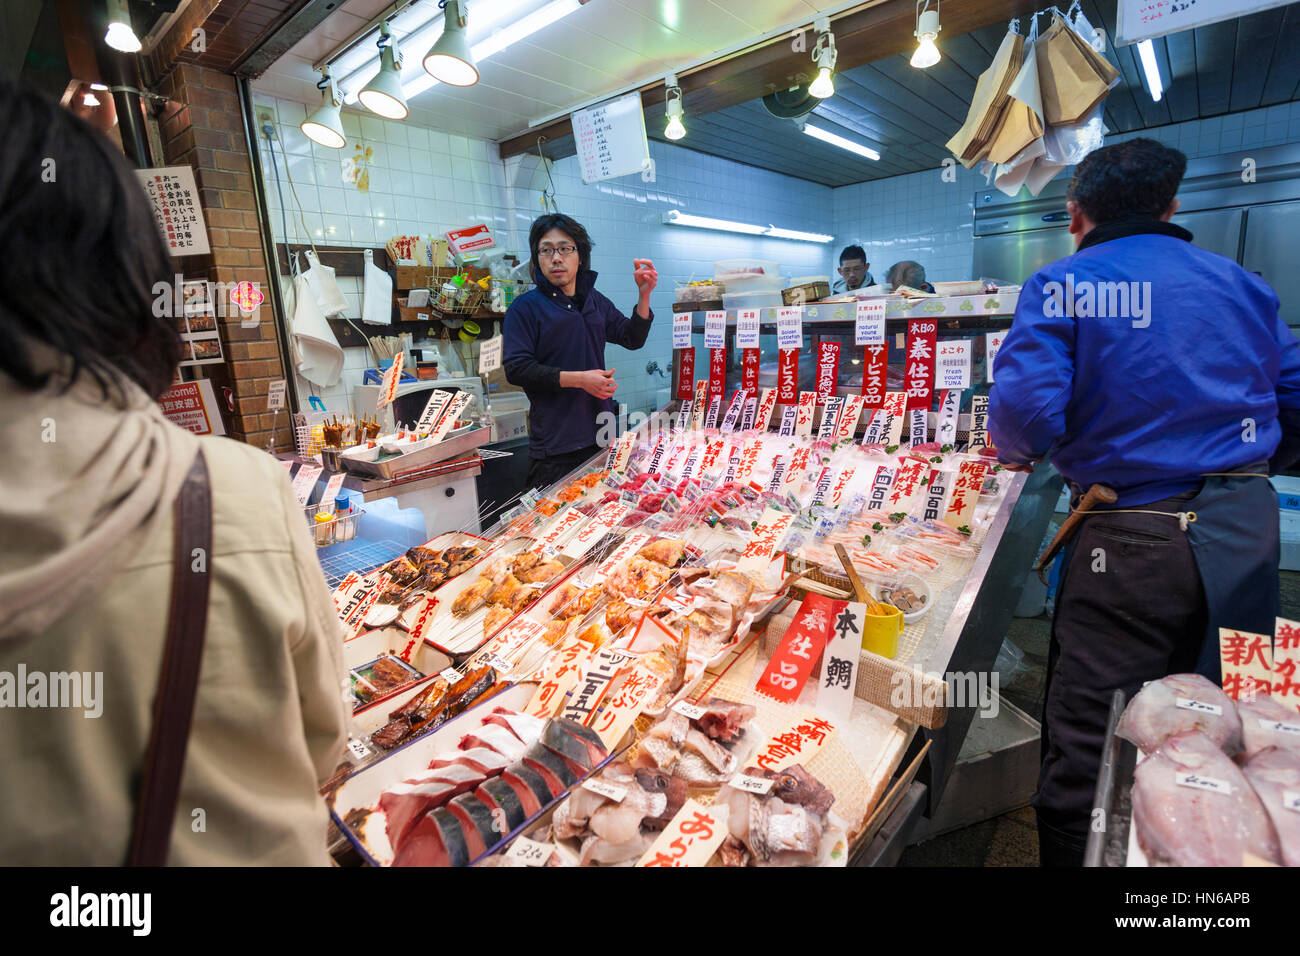 KYOTO, JAPAN - März 23: Mitarbeiter und Kunden in einen Stall zu verkaufen Fisch in Nishiki-Lebensmittelmarkt in zentralen Kyoto am 23. März 2012. Stockfoto